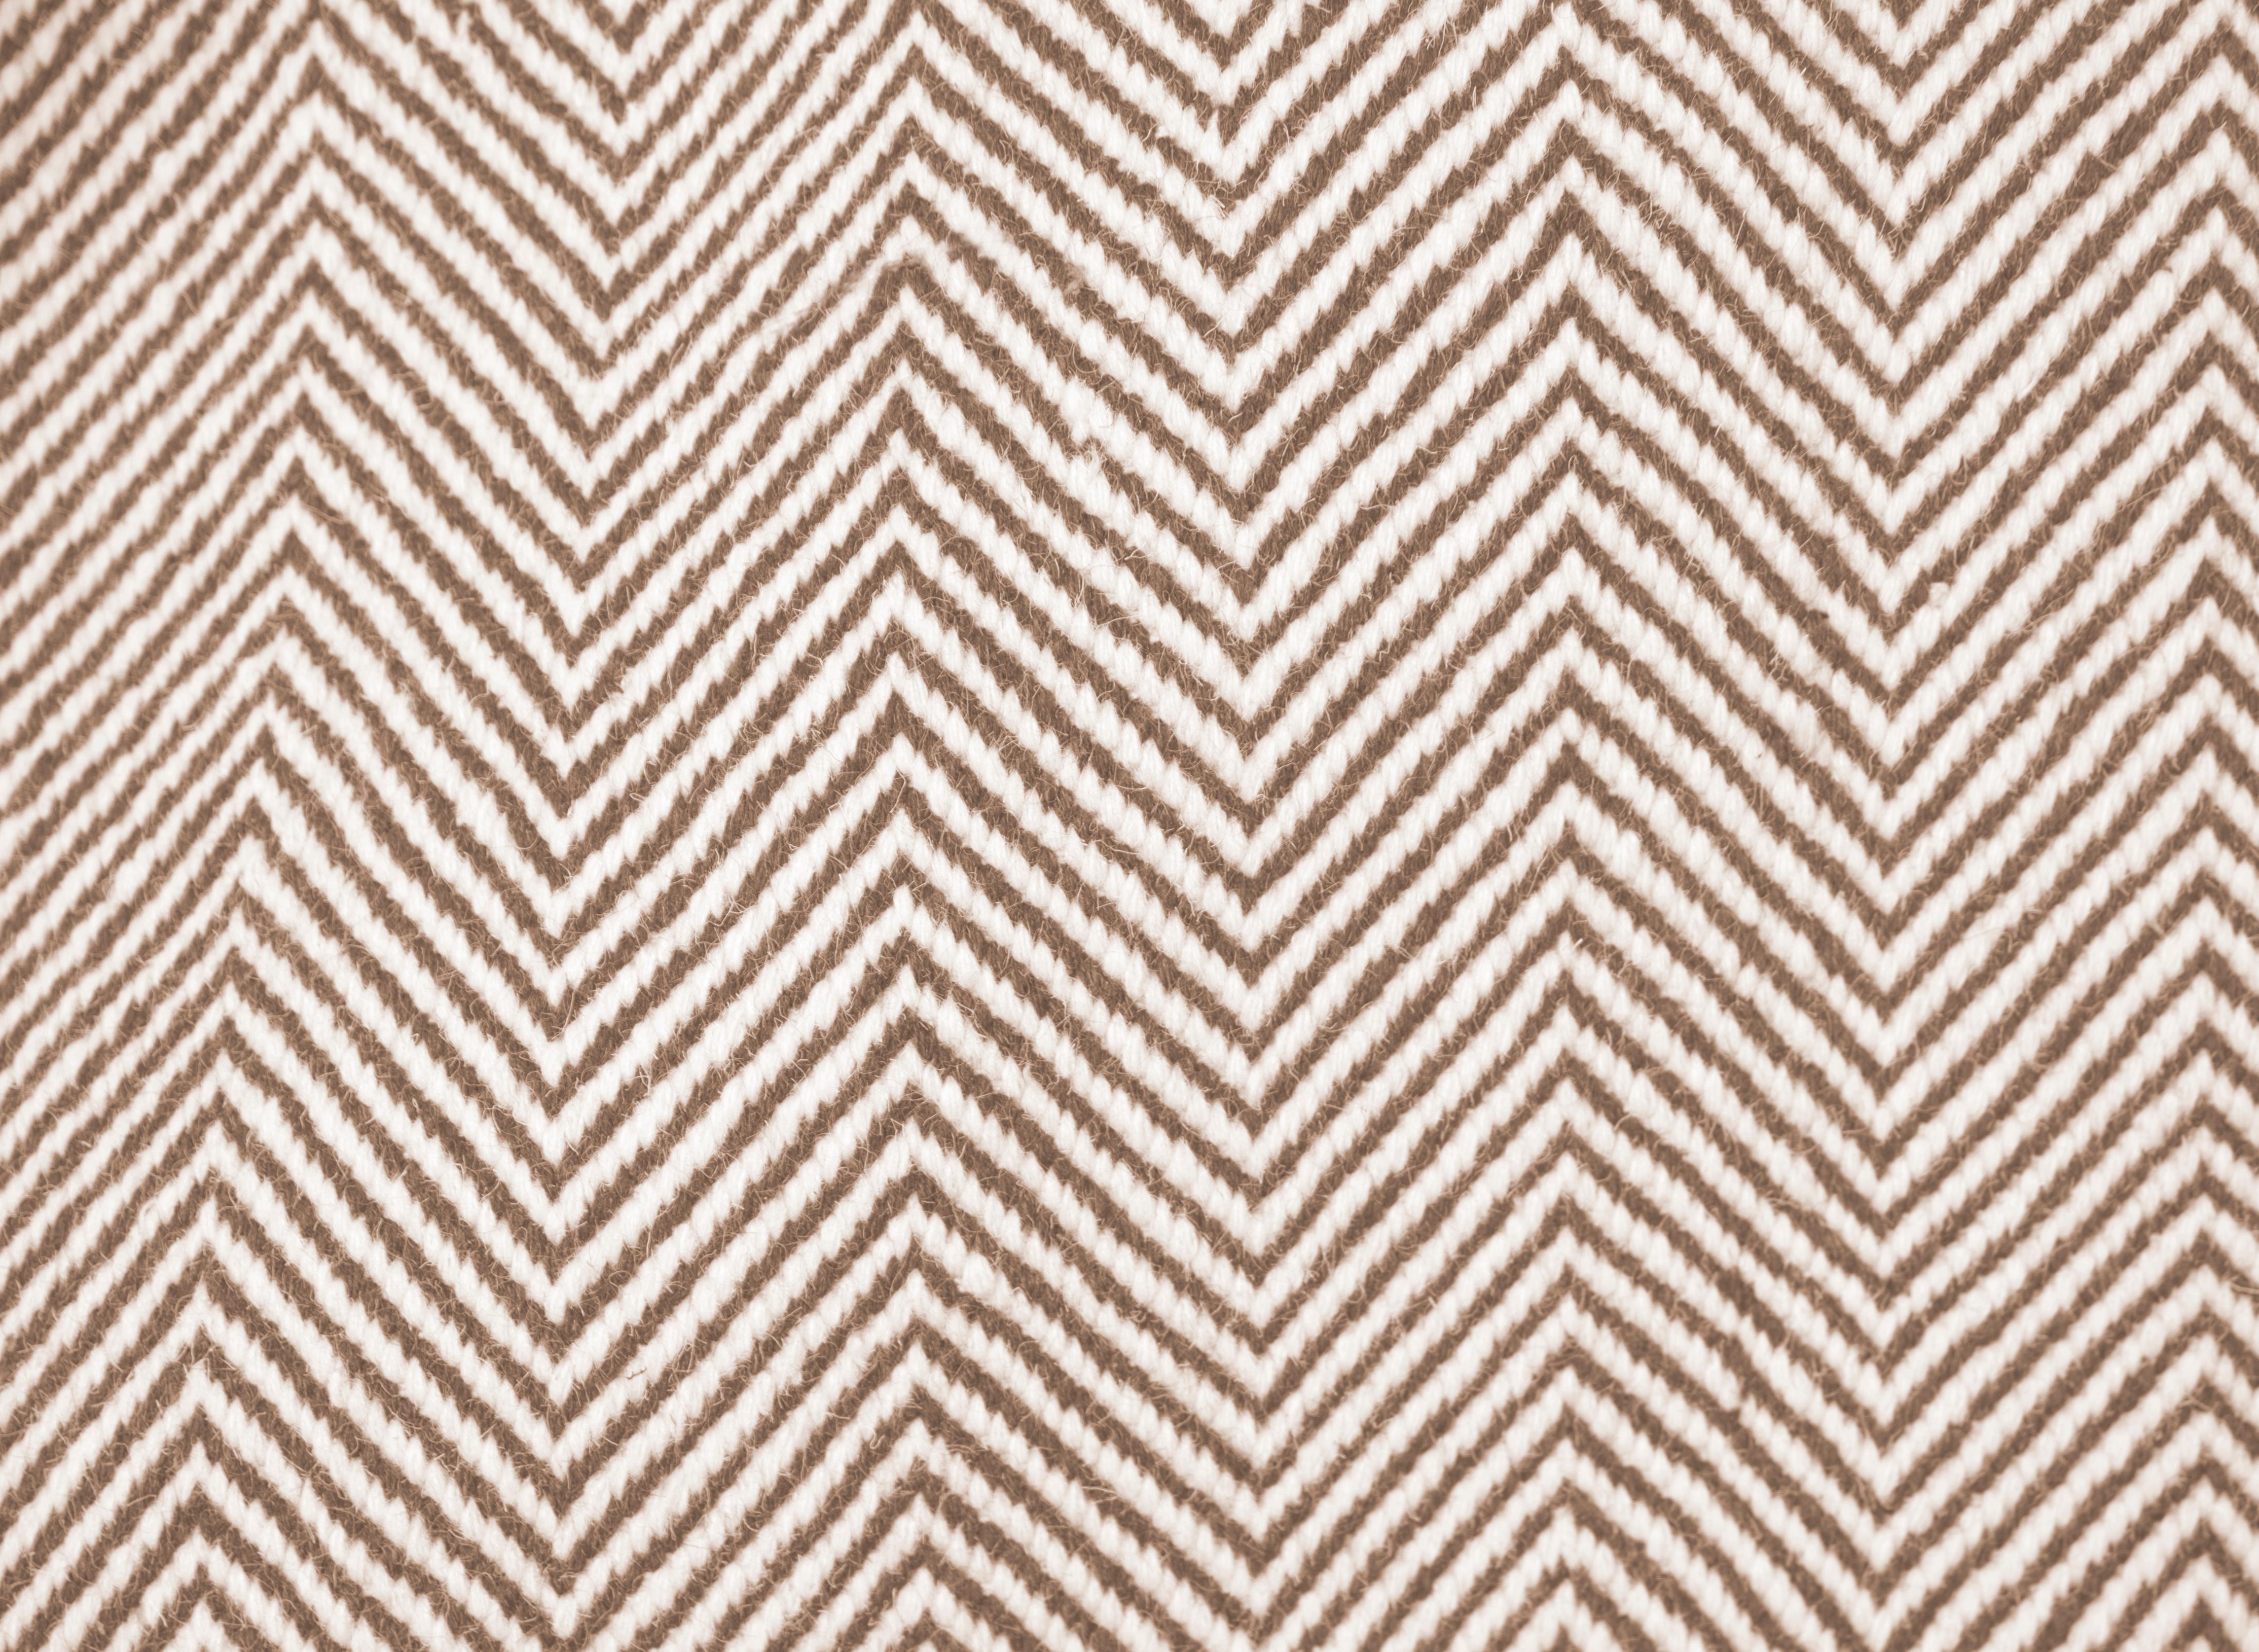 Ce tapis Paddle Dhurrie a été tissé à la main de manière éthique dans les fils de laine les plus fins par des artisans du nord de l'Inde, en utilisant une technique de tissage traditionnelle qui définit le design.
Chaque tapis est tissé à la main